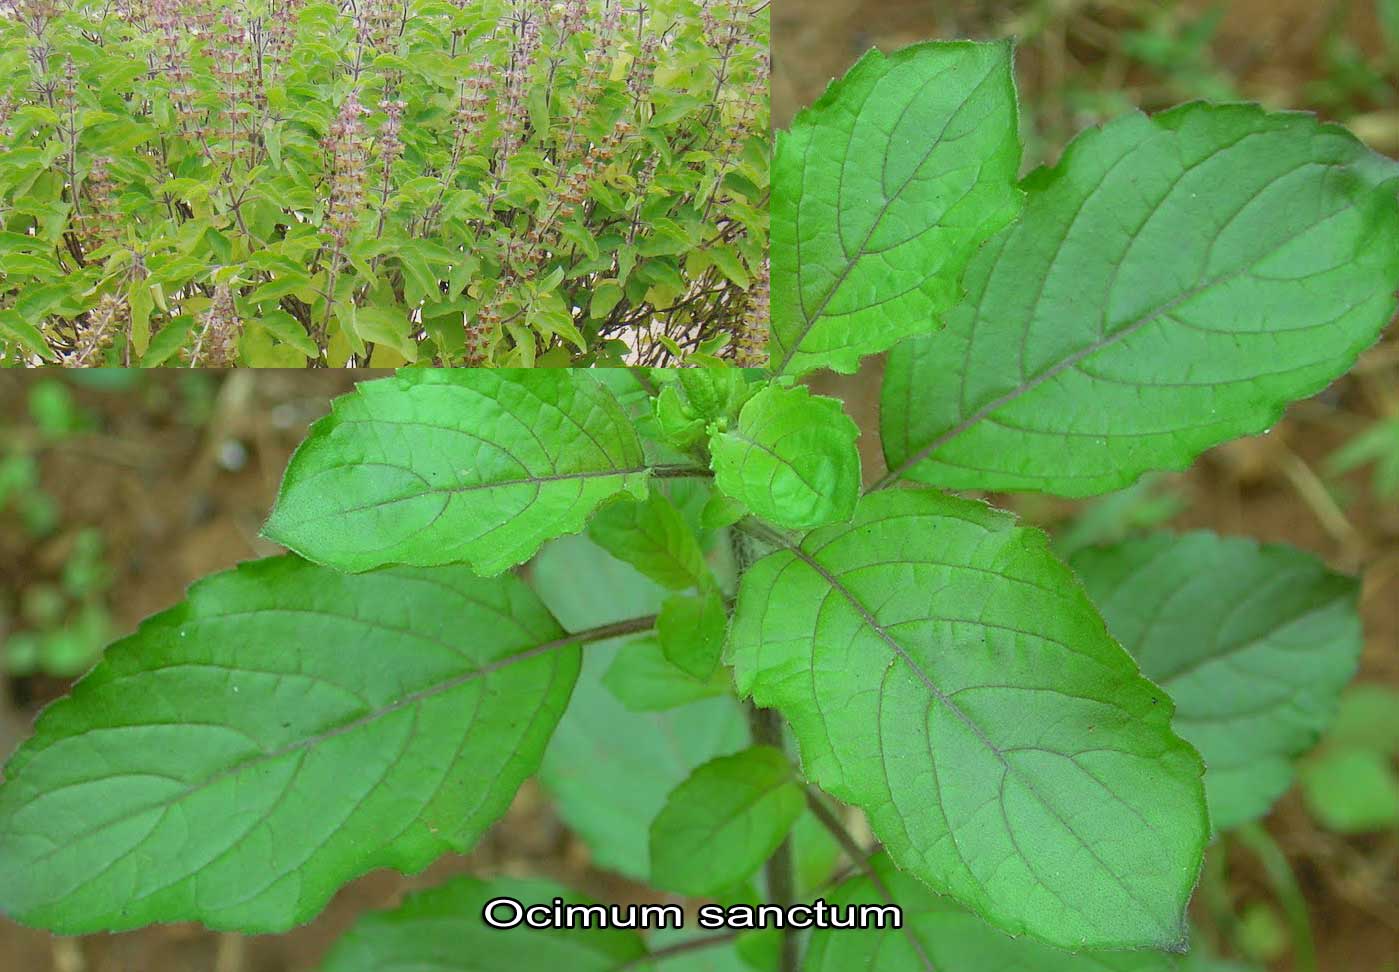 sanctum ocimum plants tulsi medicinal lamiaceae tulasi family